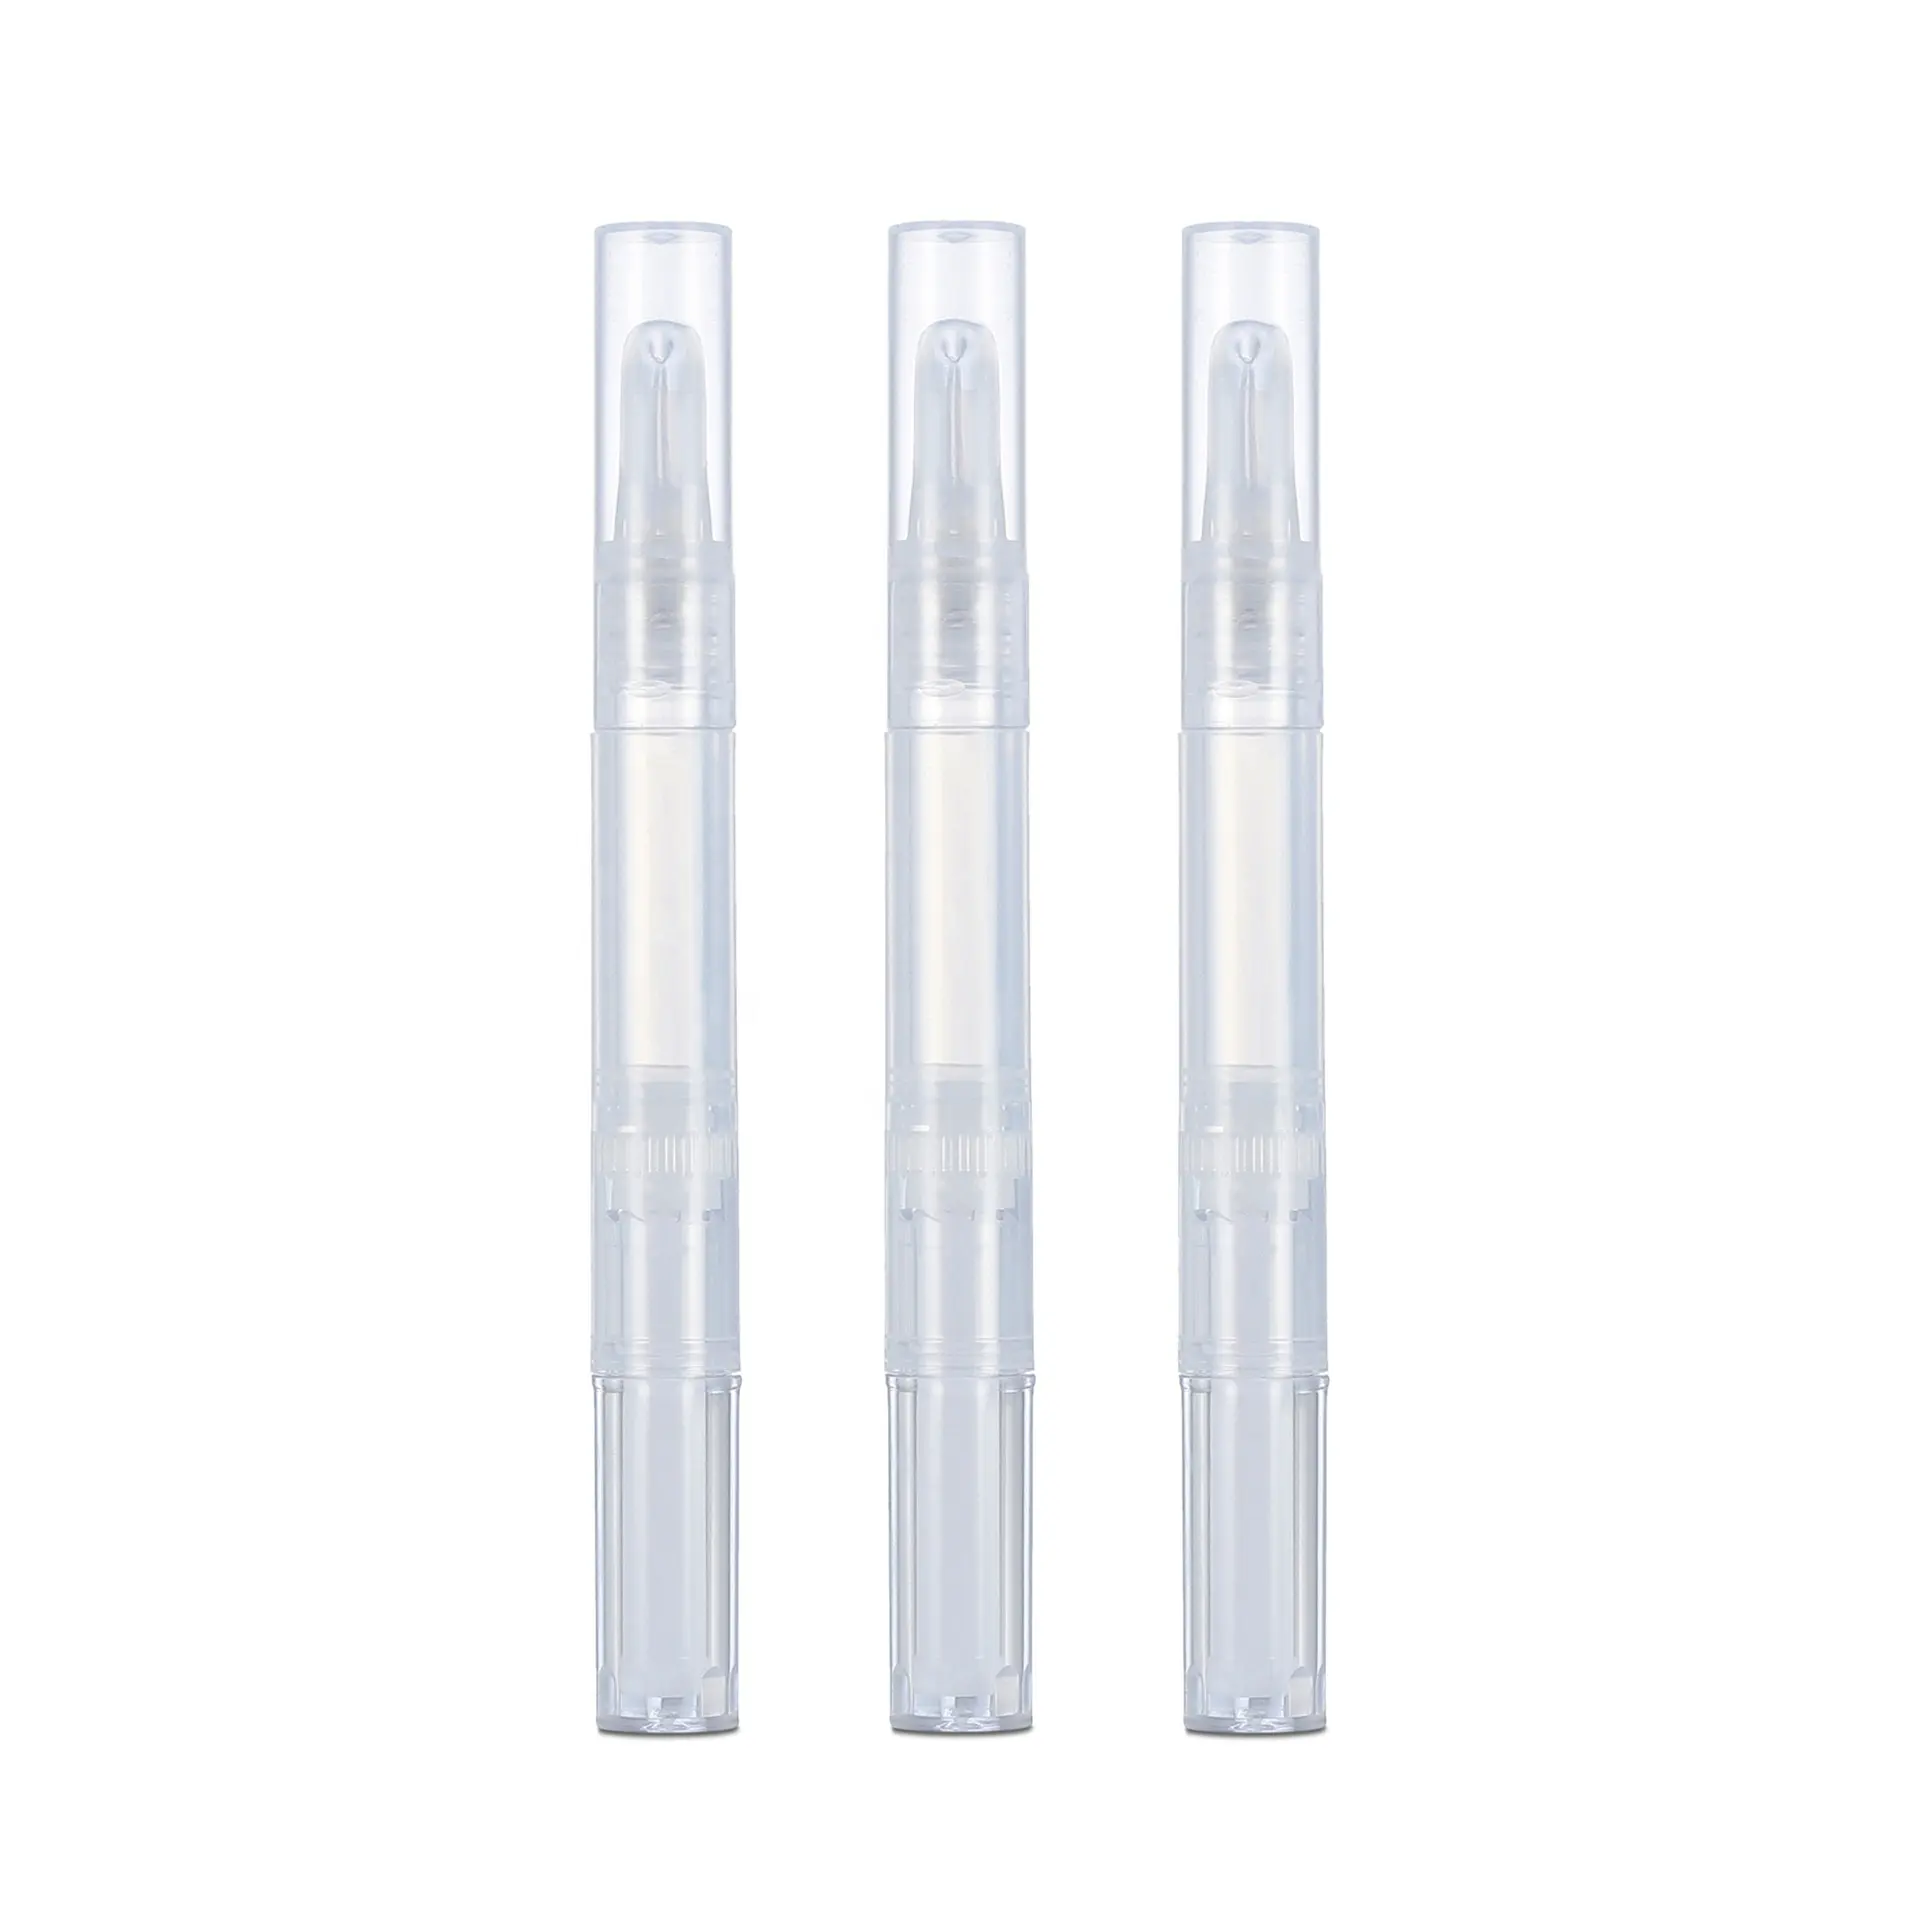 Lege Twist Plastic Twist Up Lipgloss Buis Potlood Vormige Verpakking Containers Met Pen Applicators